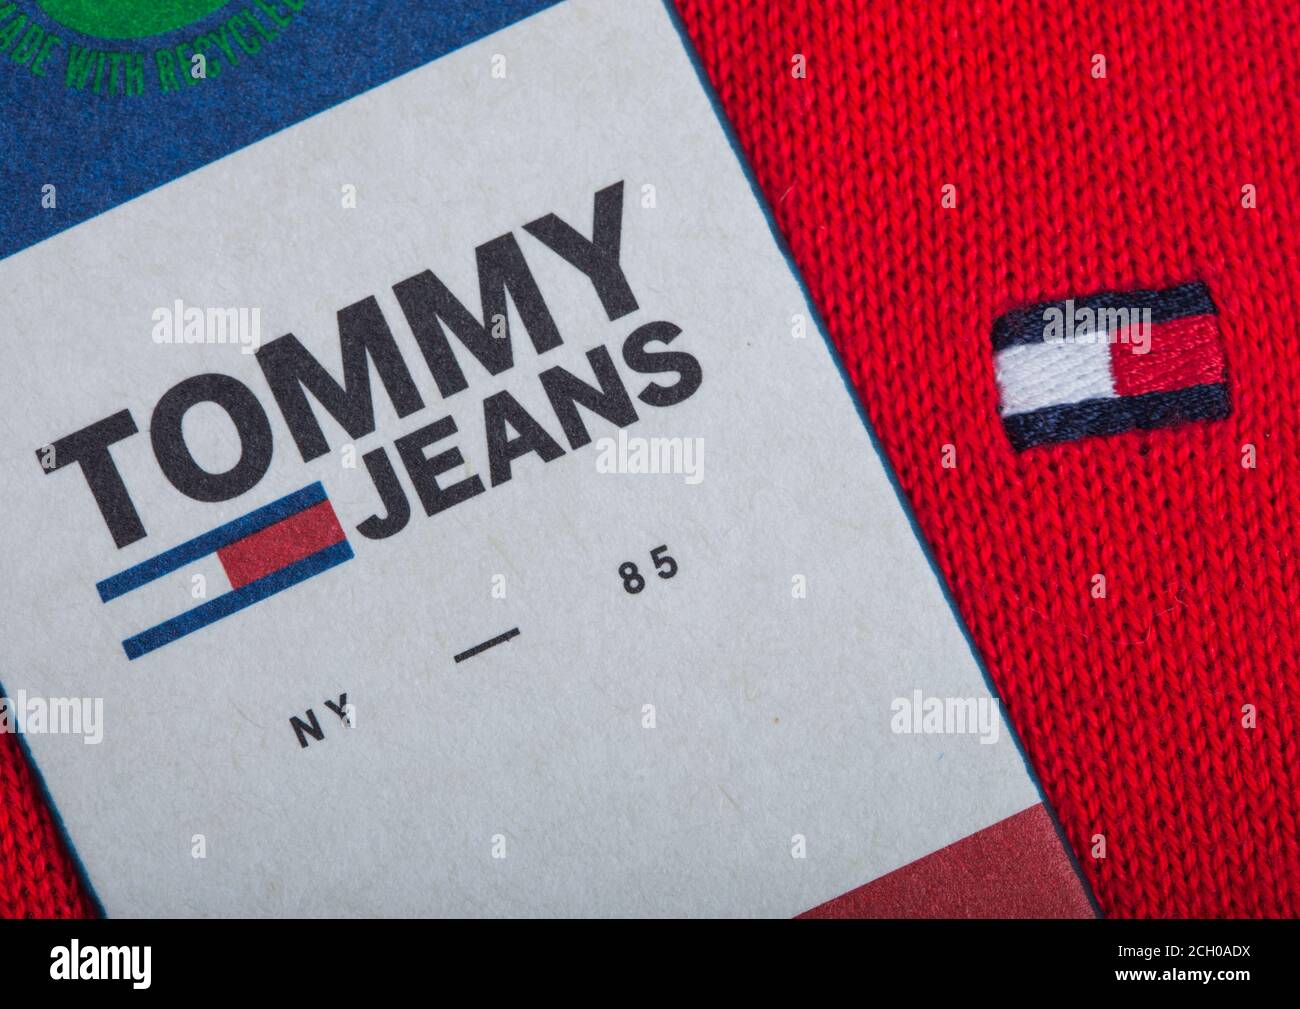 Tommy hilfiger logo fotografías e imágenes de alta resolución - Alamy